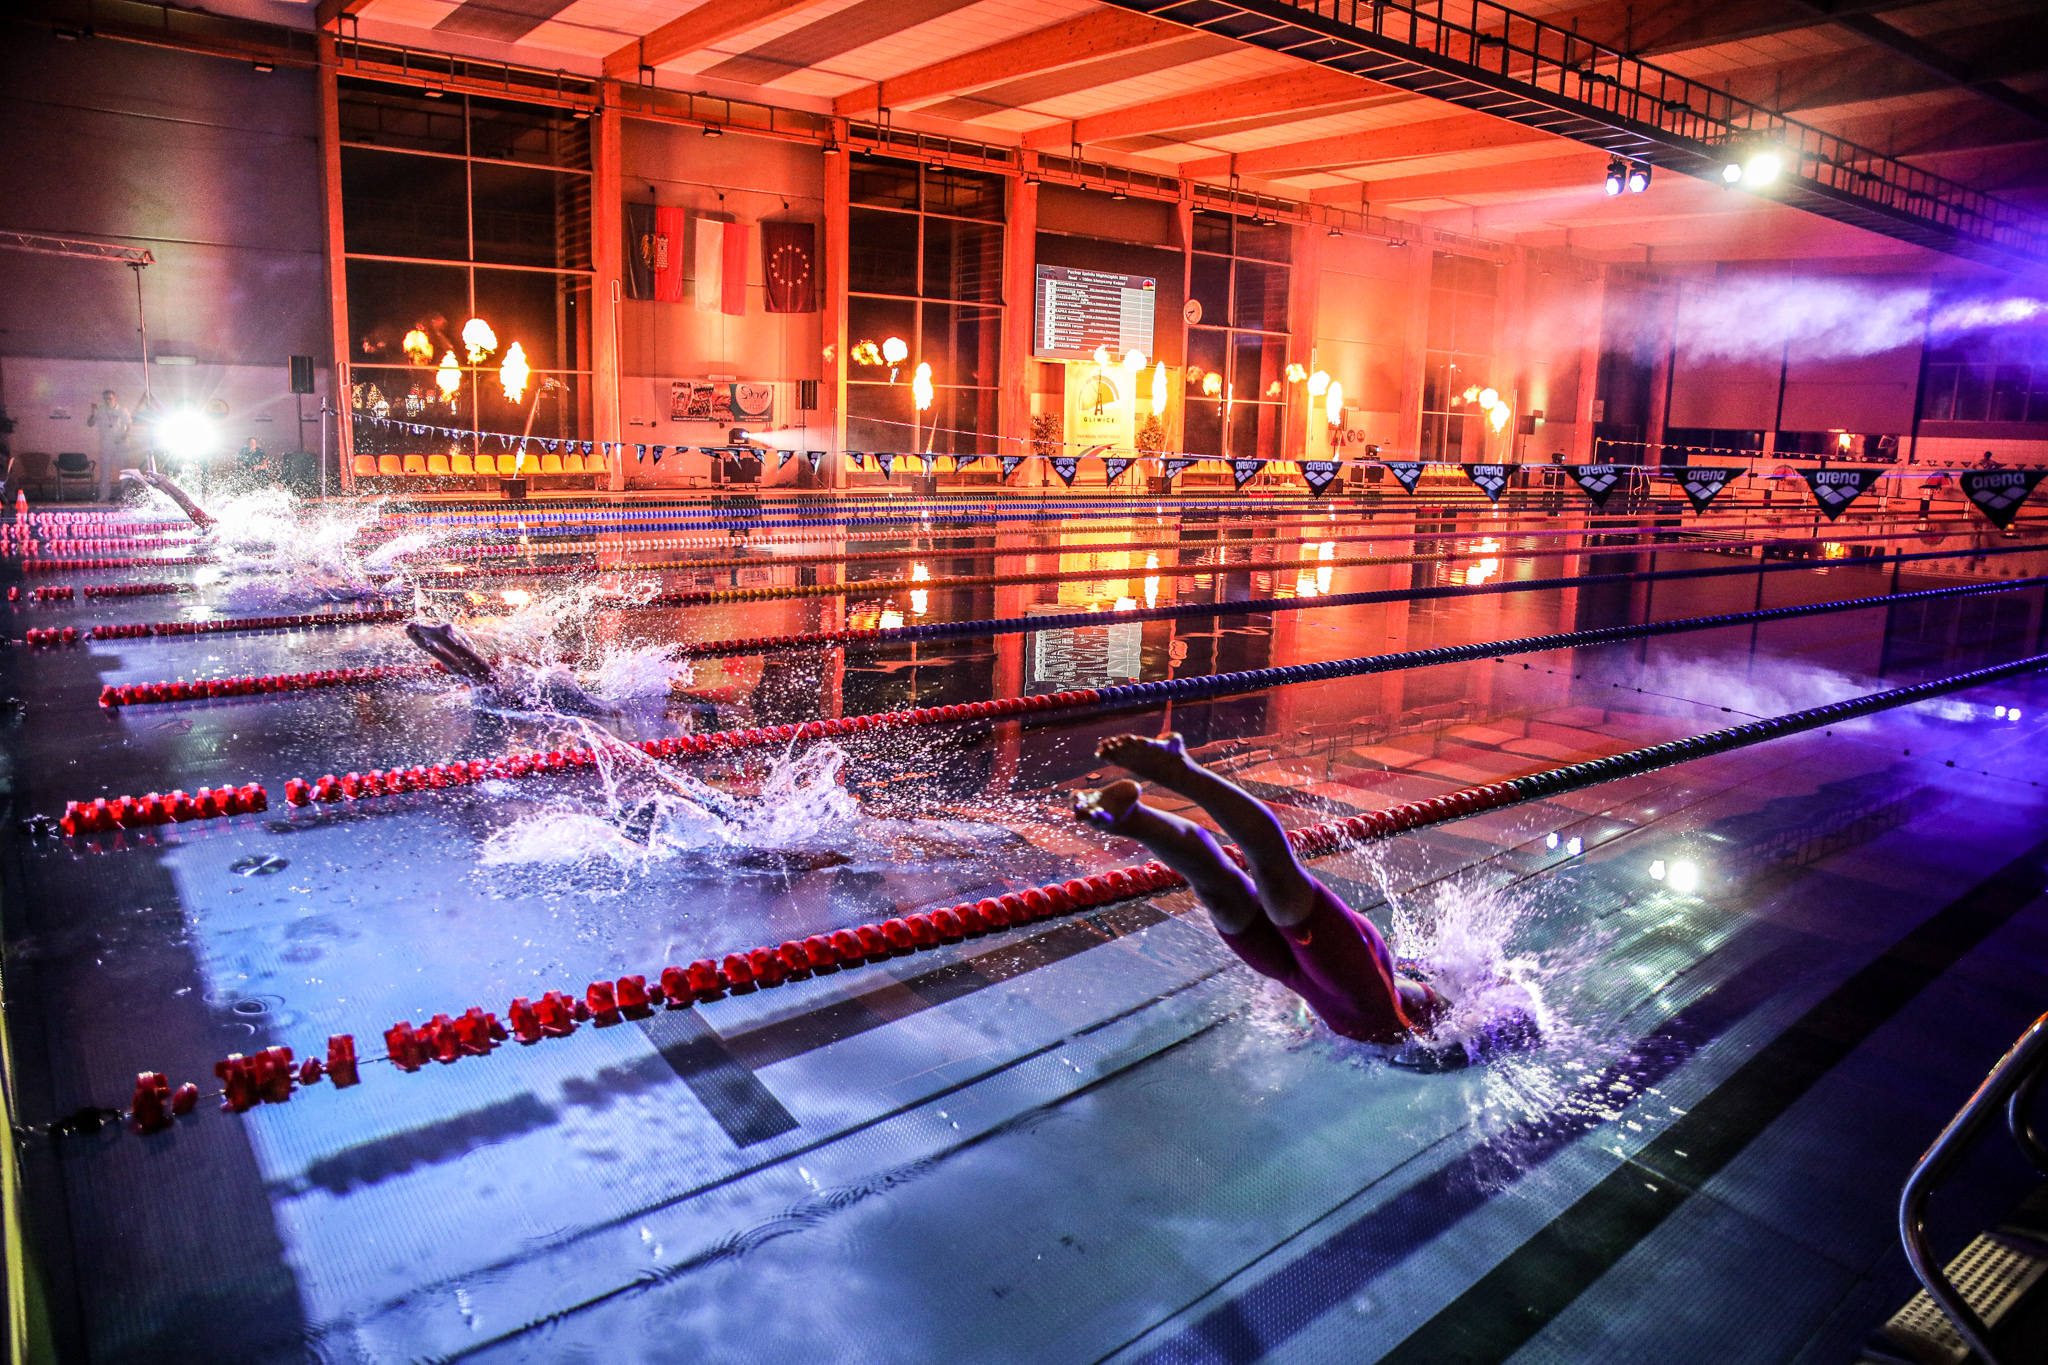 Pływacy wskakujący do basenu pośród kolorowych świateł